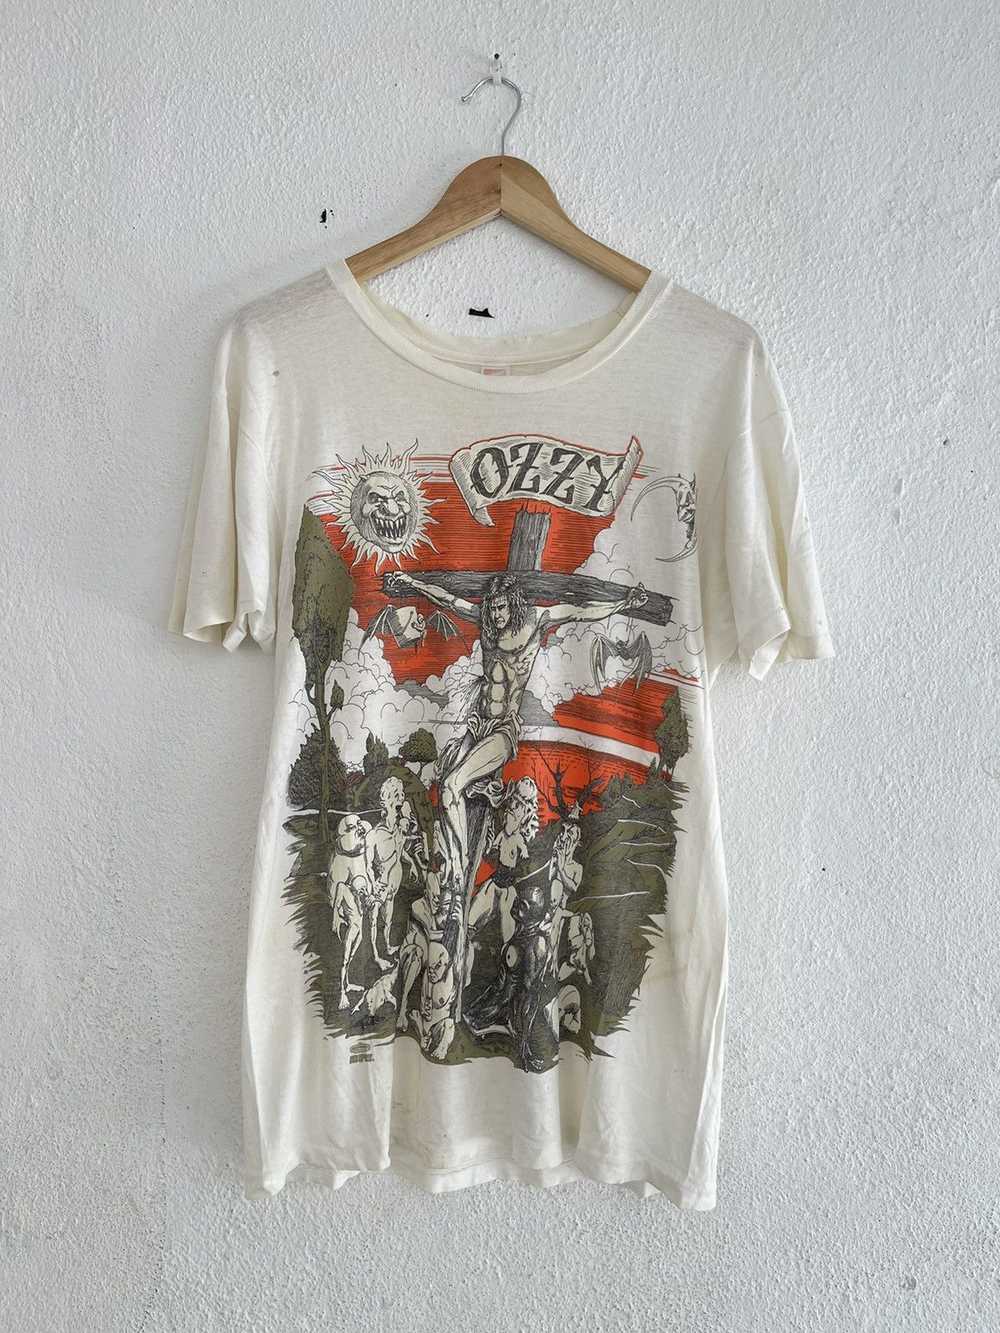 Band Tees × Vintage Vintage 1991 Ozzy Osbourne Je… - image 1